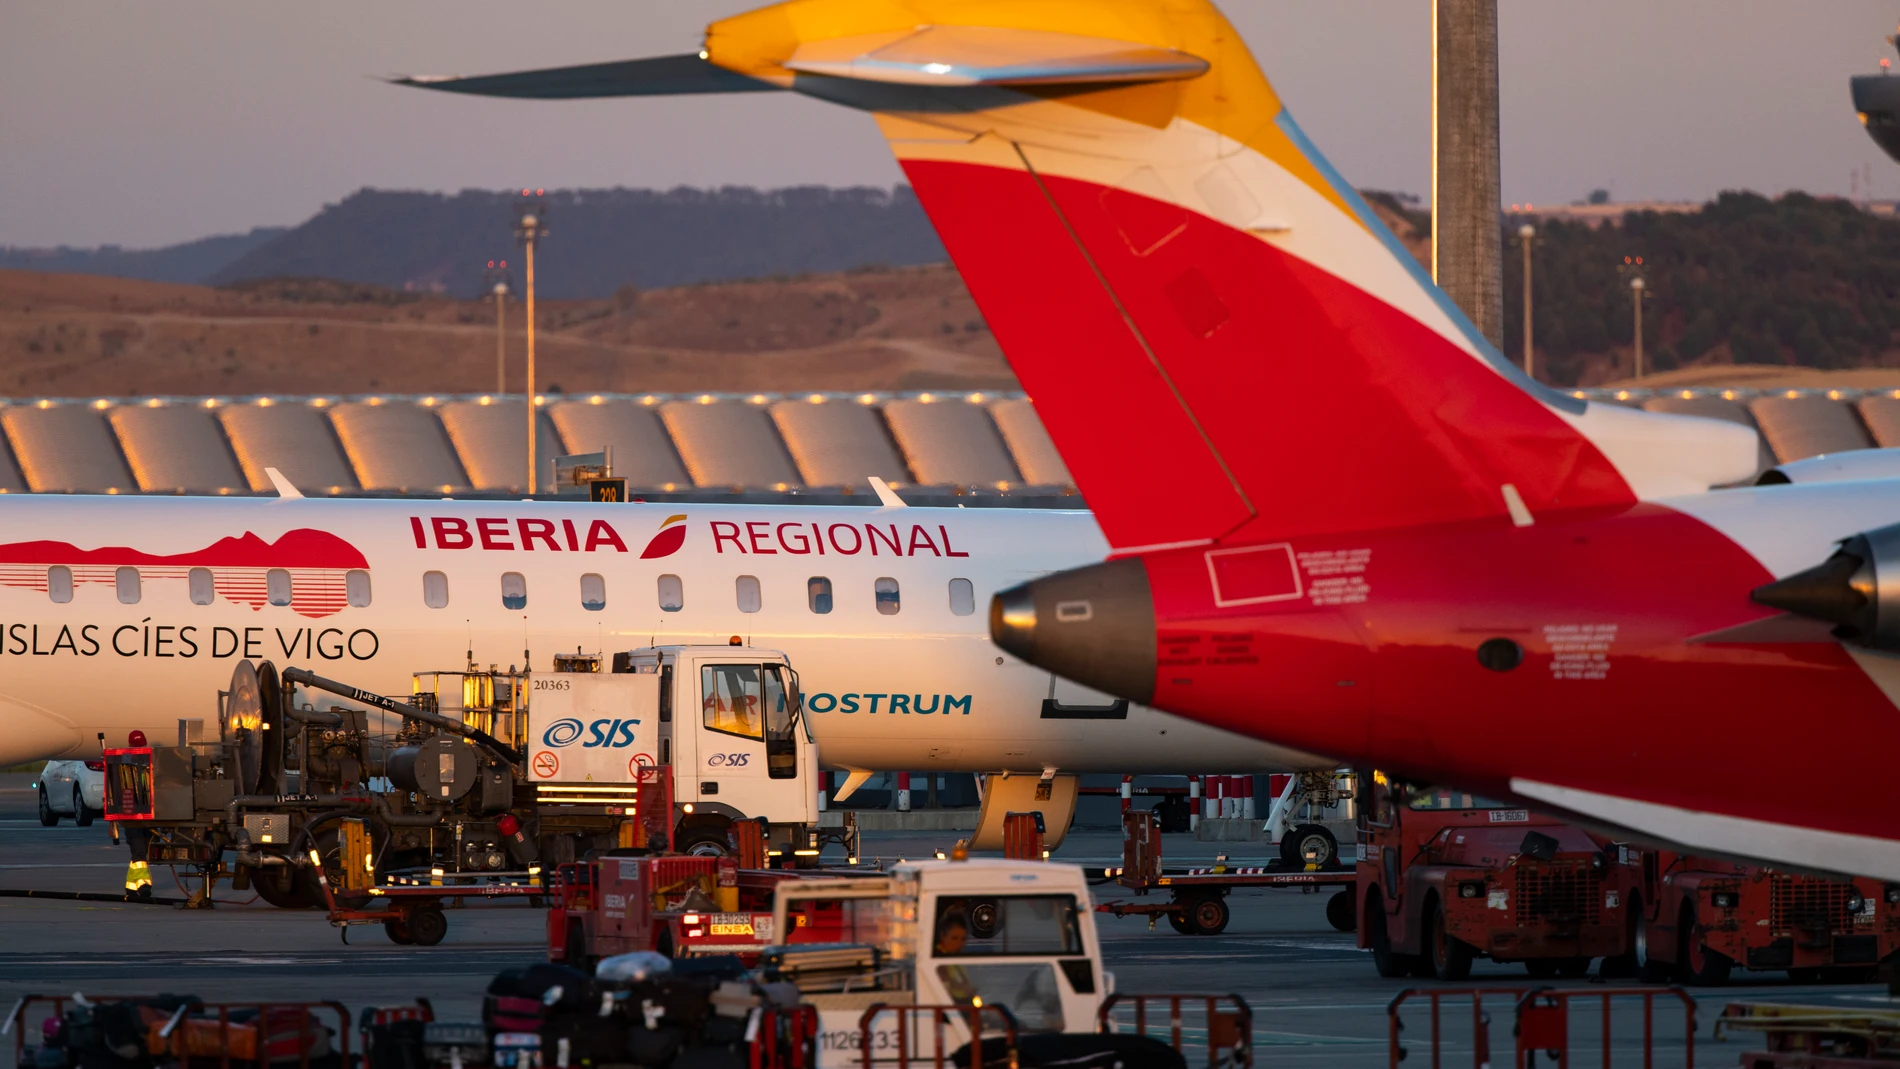 Aviones de Iberia en la Terminal T-4 del aeropuerto Adolfo Suarez Barajas